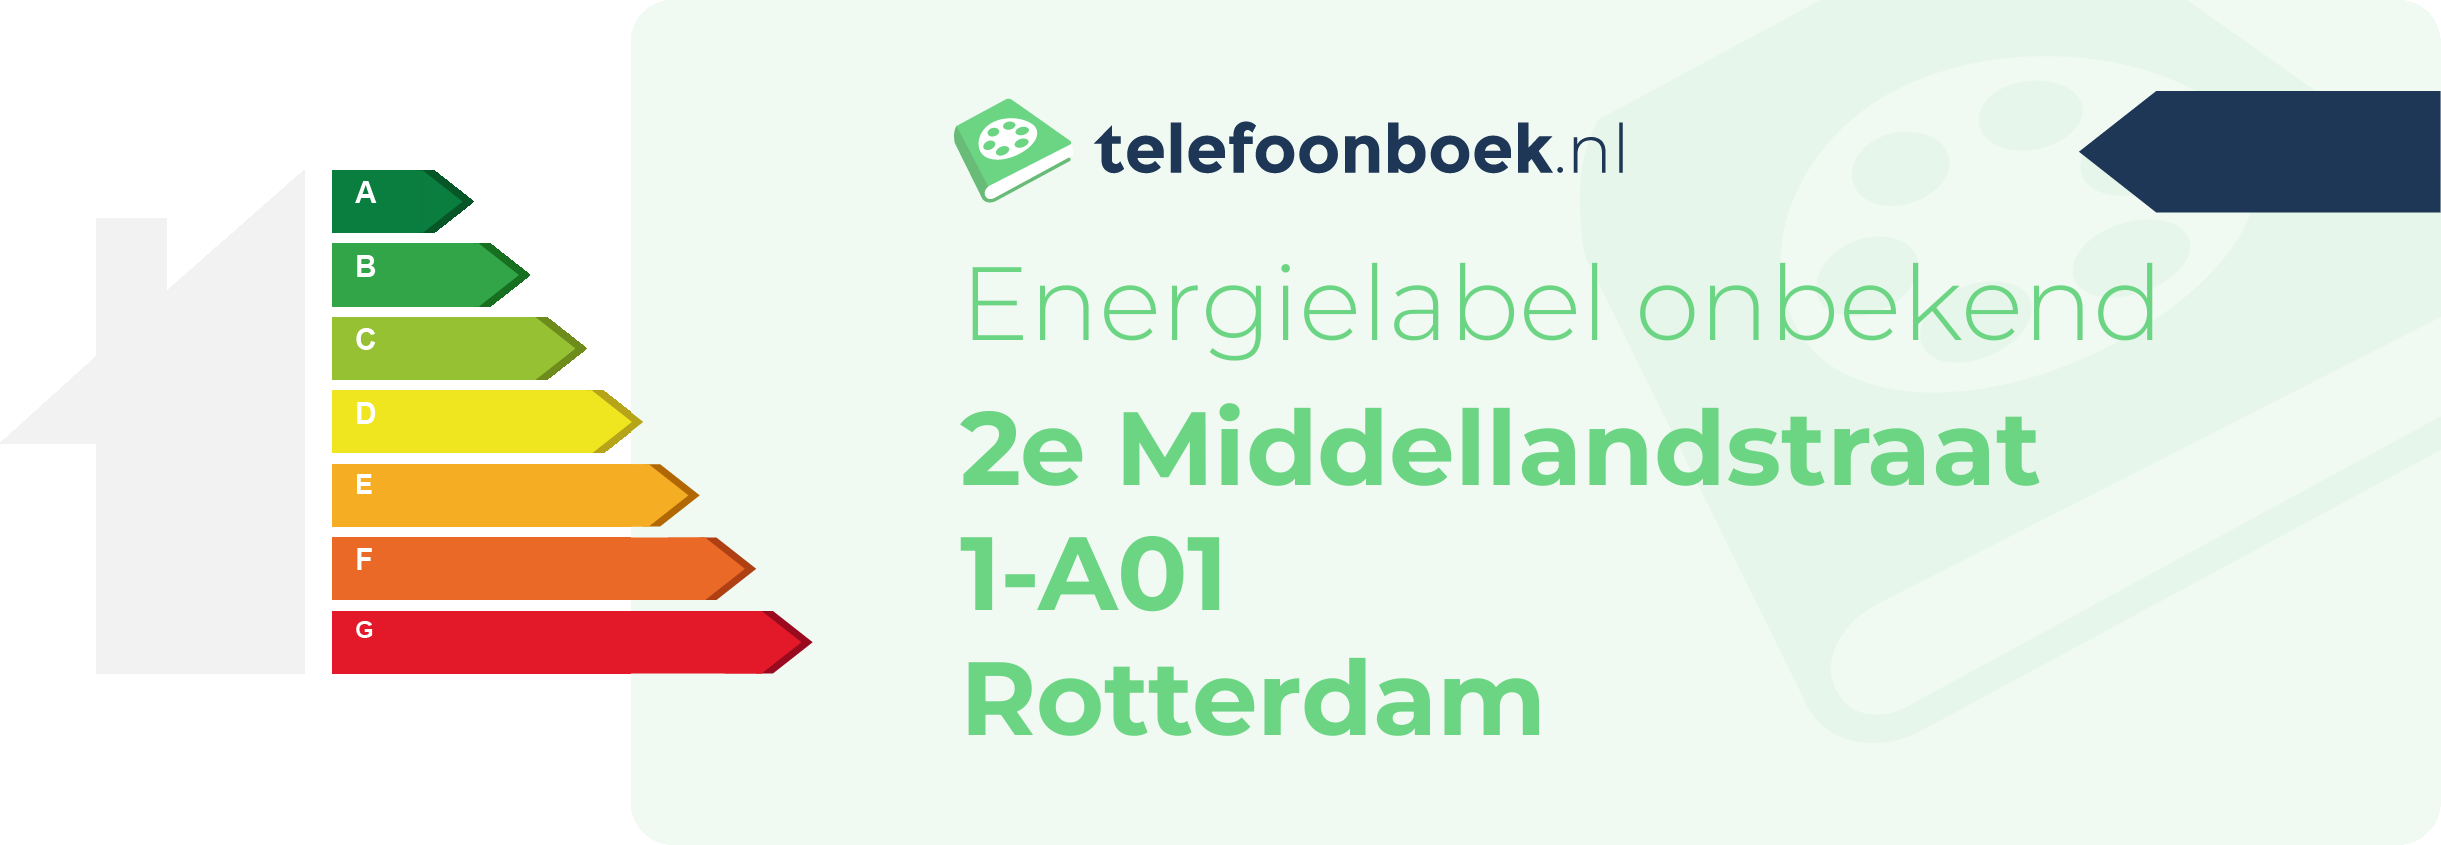 Energielabel 2e Middellandstraat 1-A01 Rotterdam